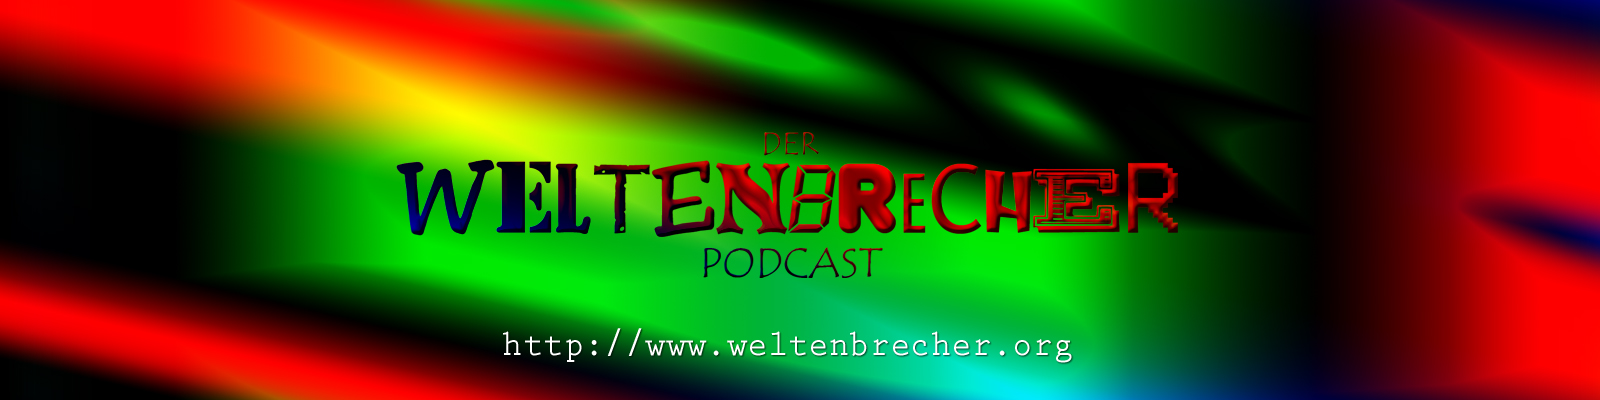 Weltenbrecher.org - Podcasts und Hörspiele